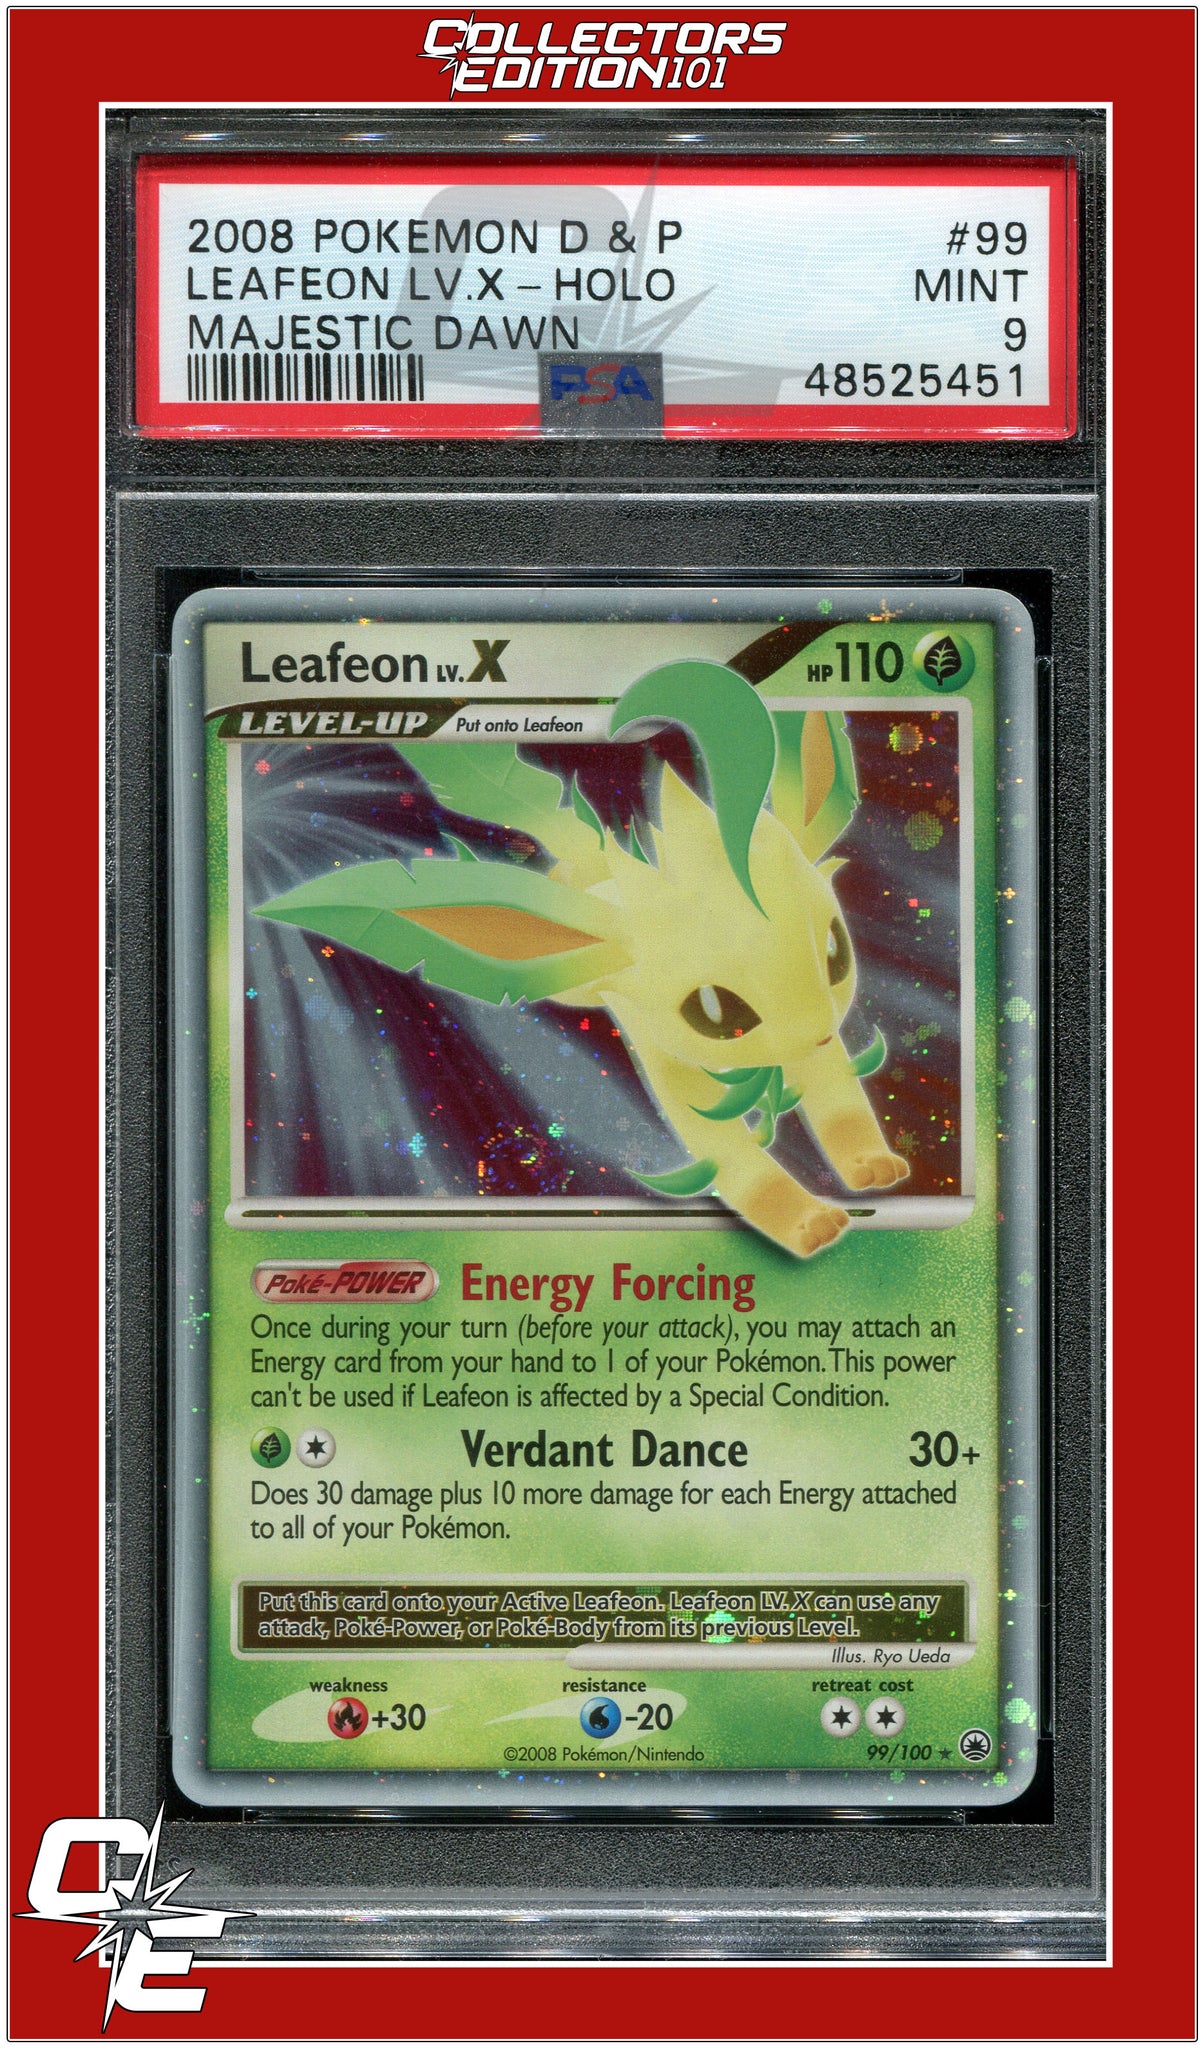 PSA 9 MINT Leafeon LV. X DP Majestic Dawn Pokemon Card